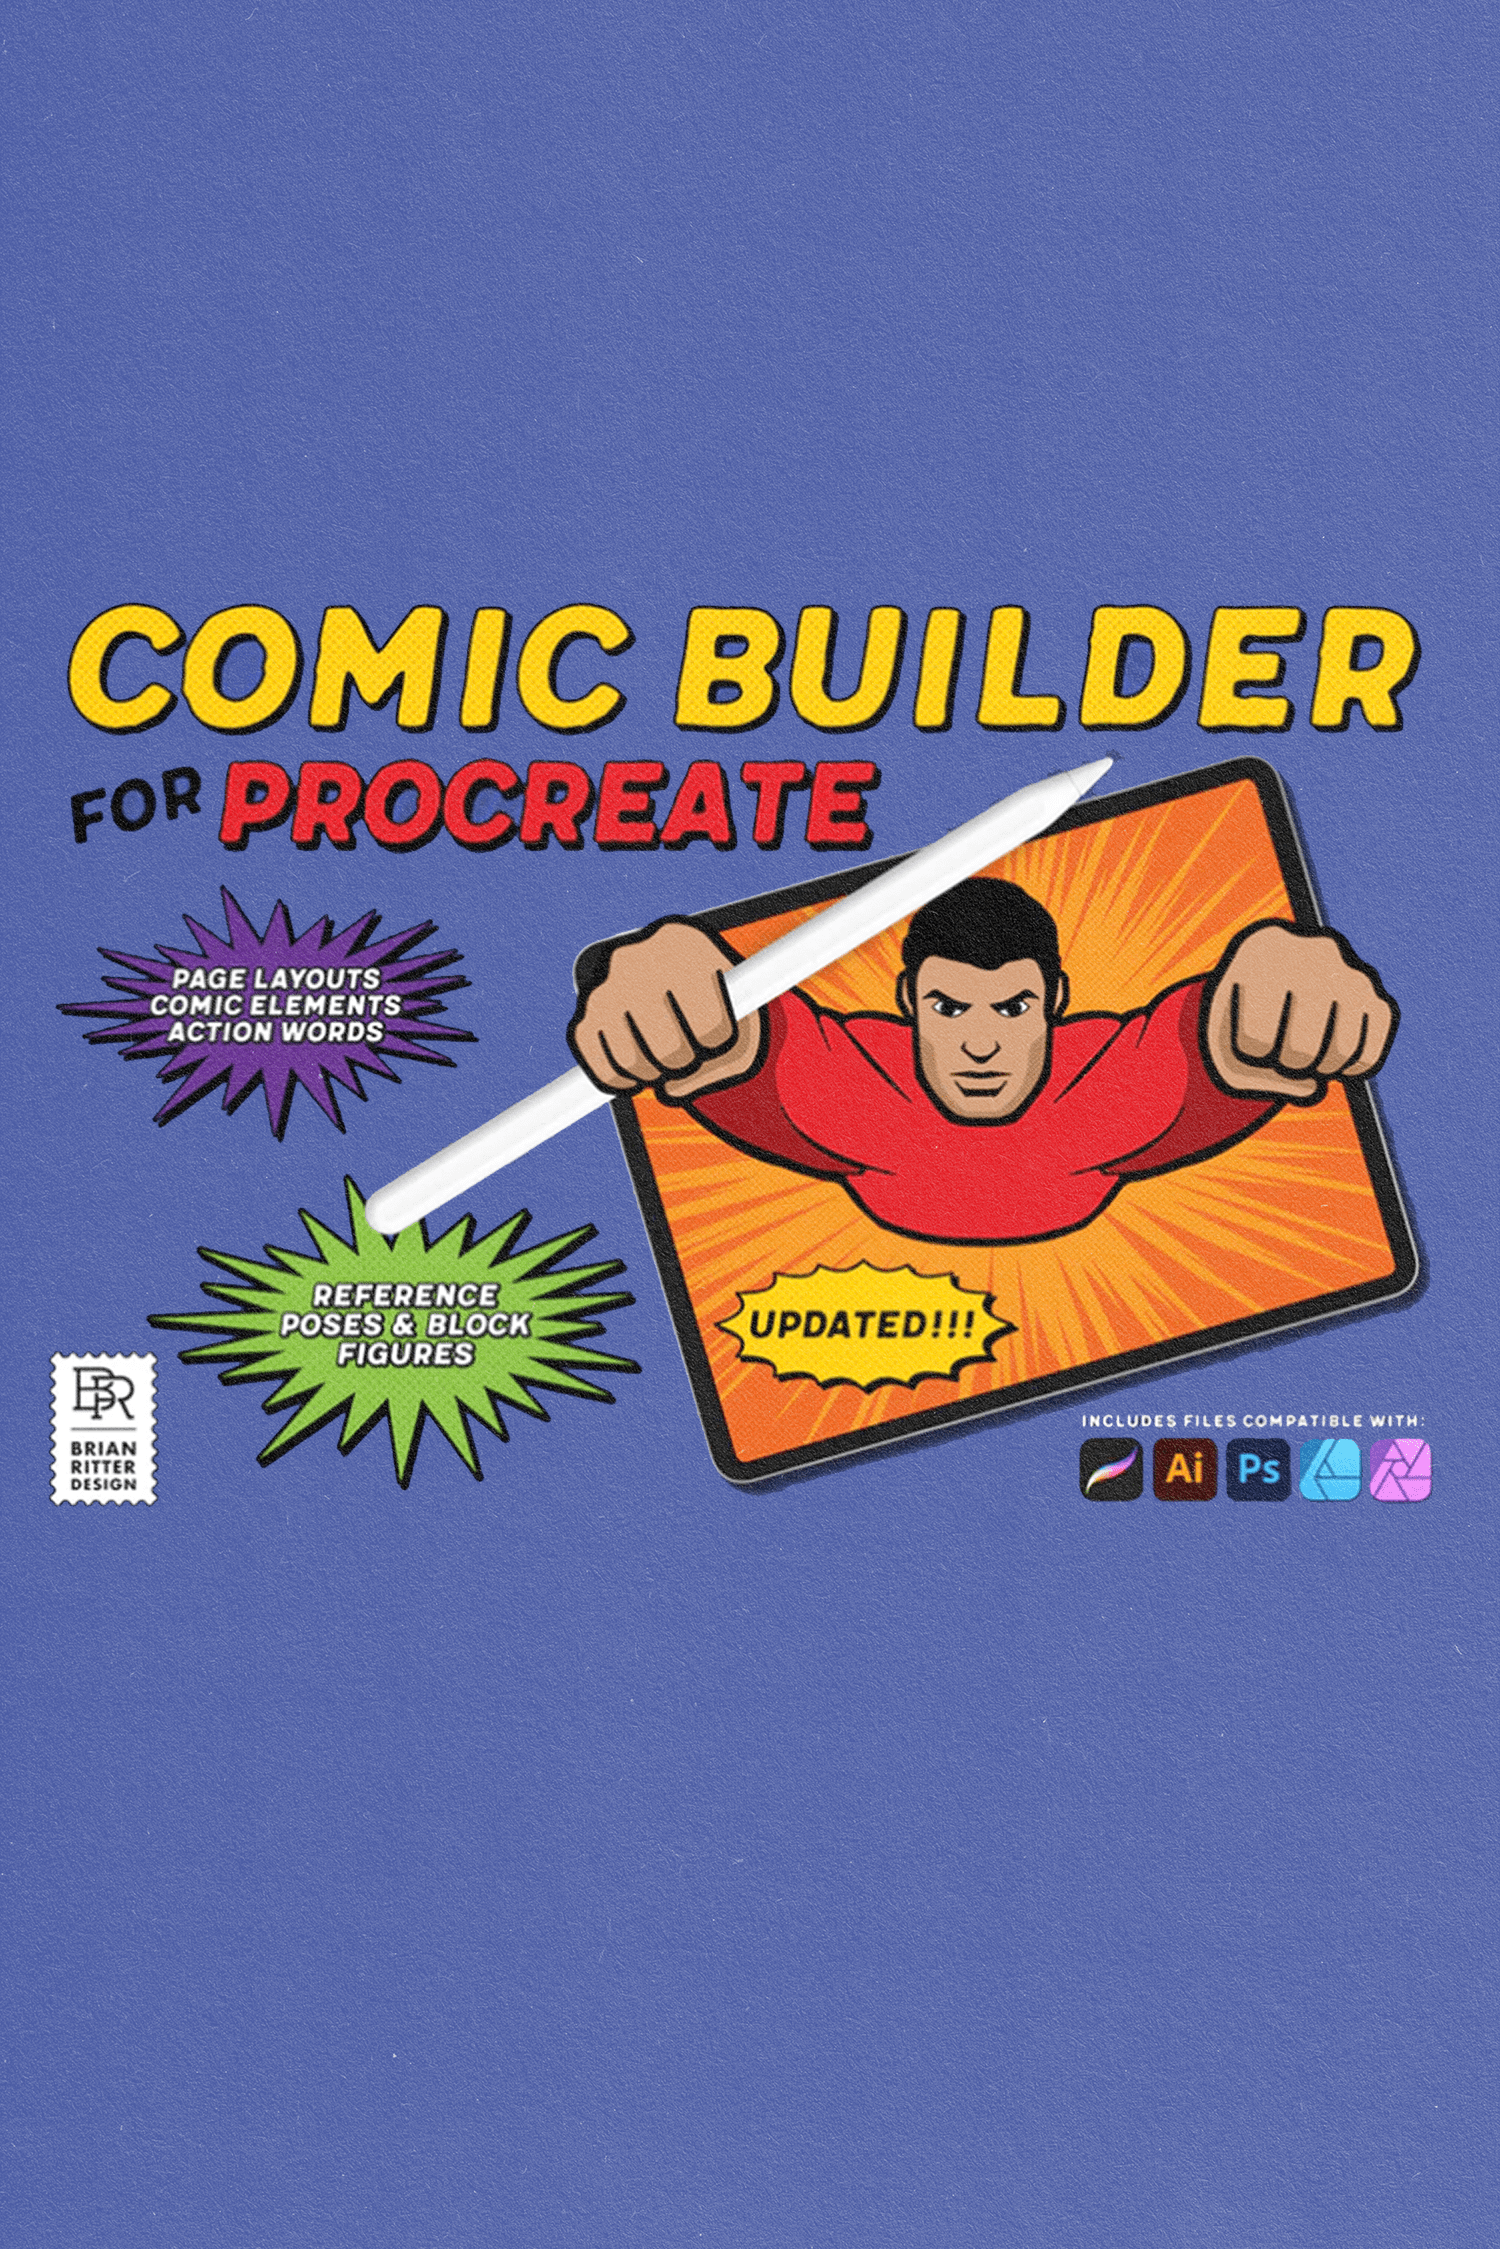 Comic Builder Toolkit von Brian Ritter Design